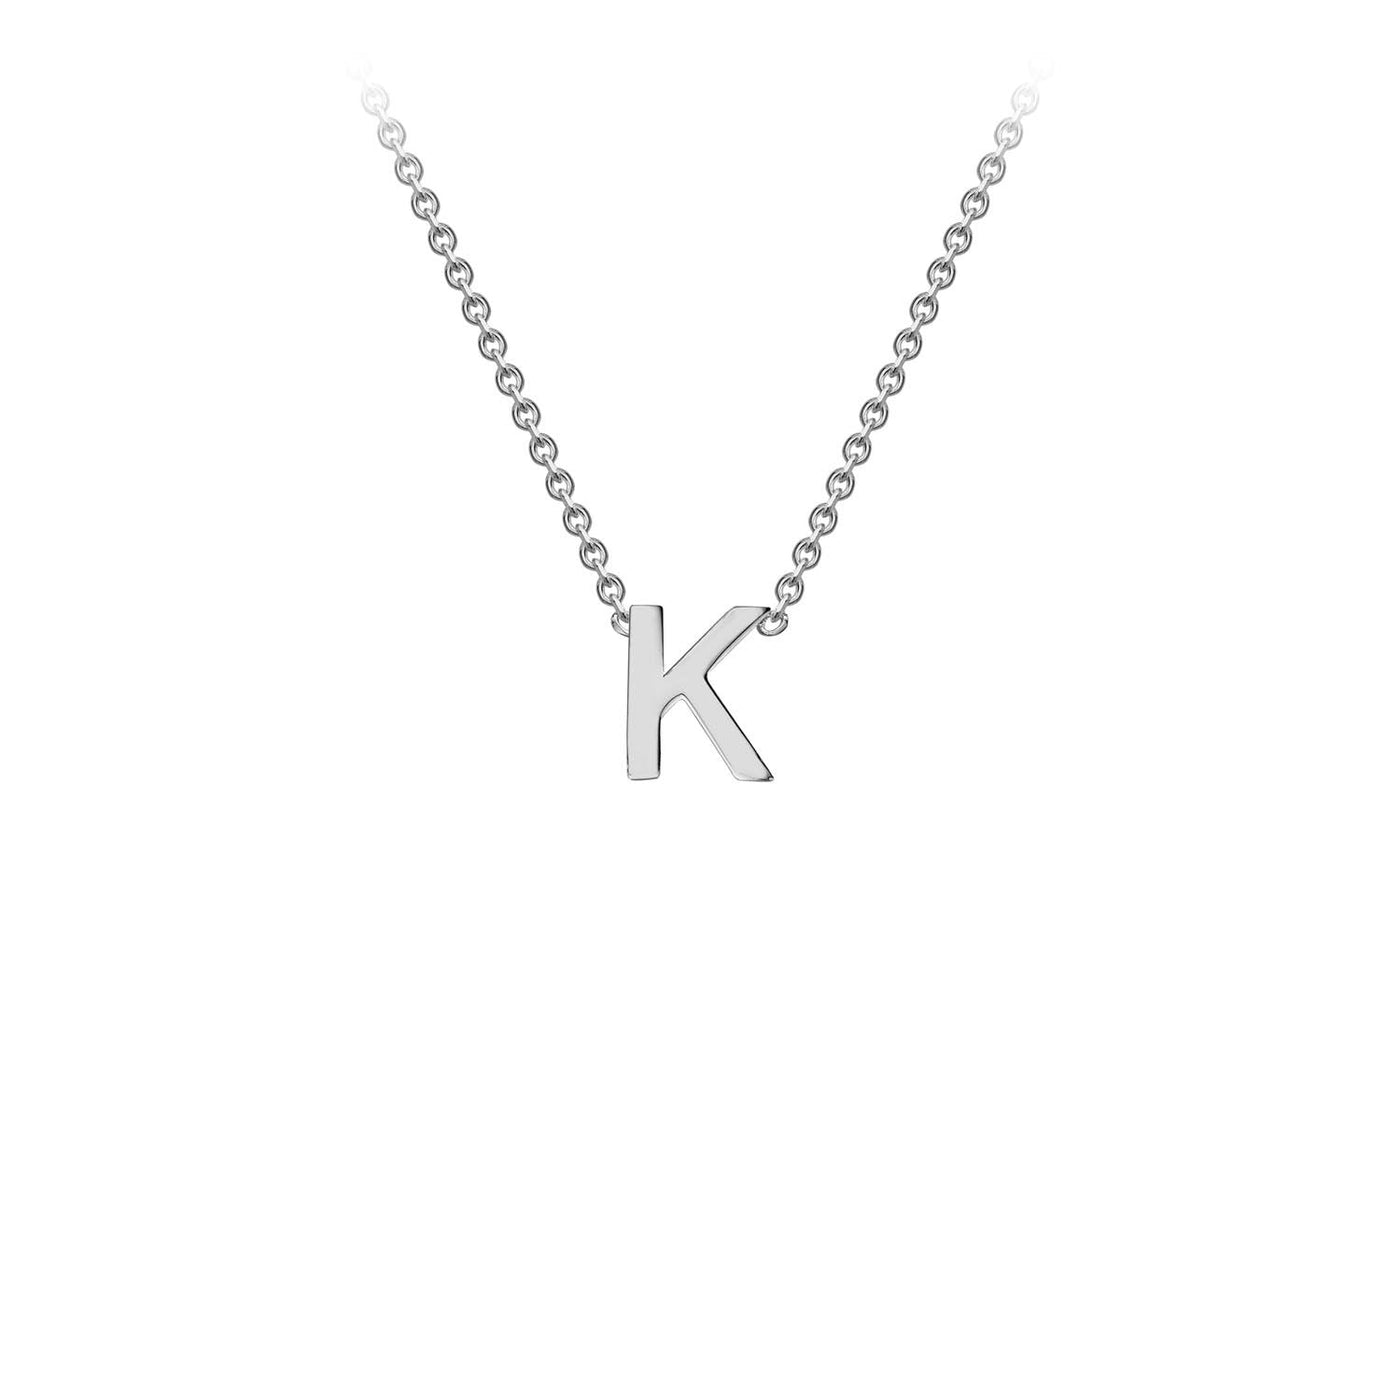 9K White Gold 'K' Initial Adjustable Letter Necklace 38/43cm